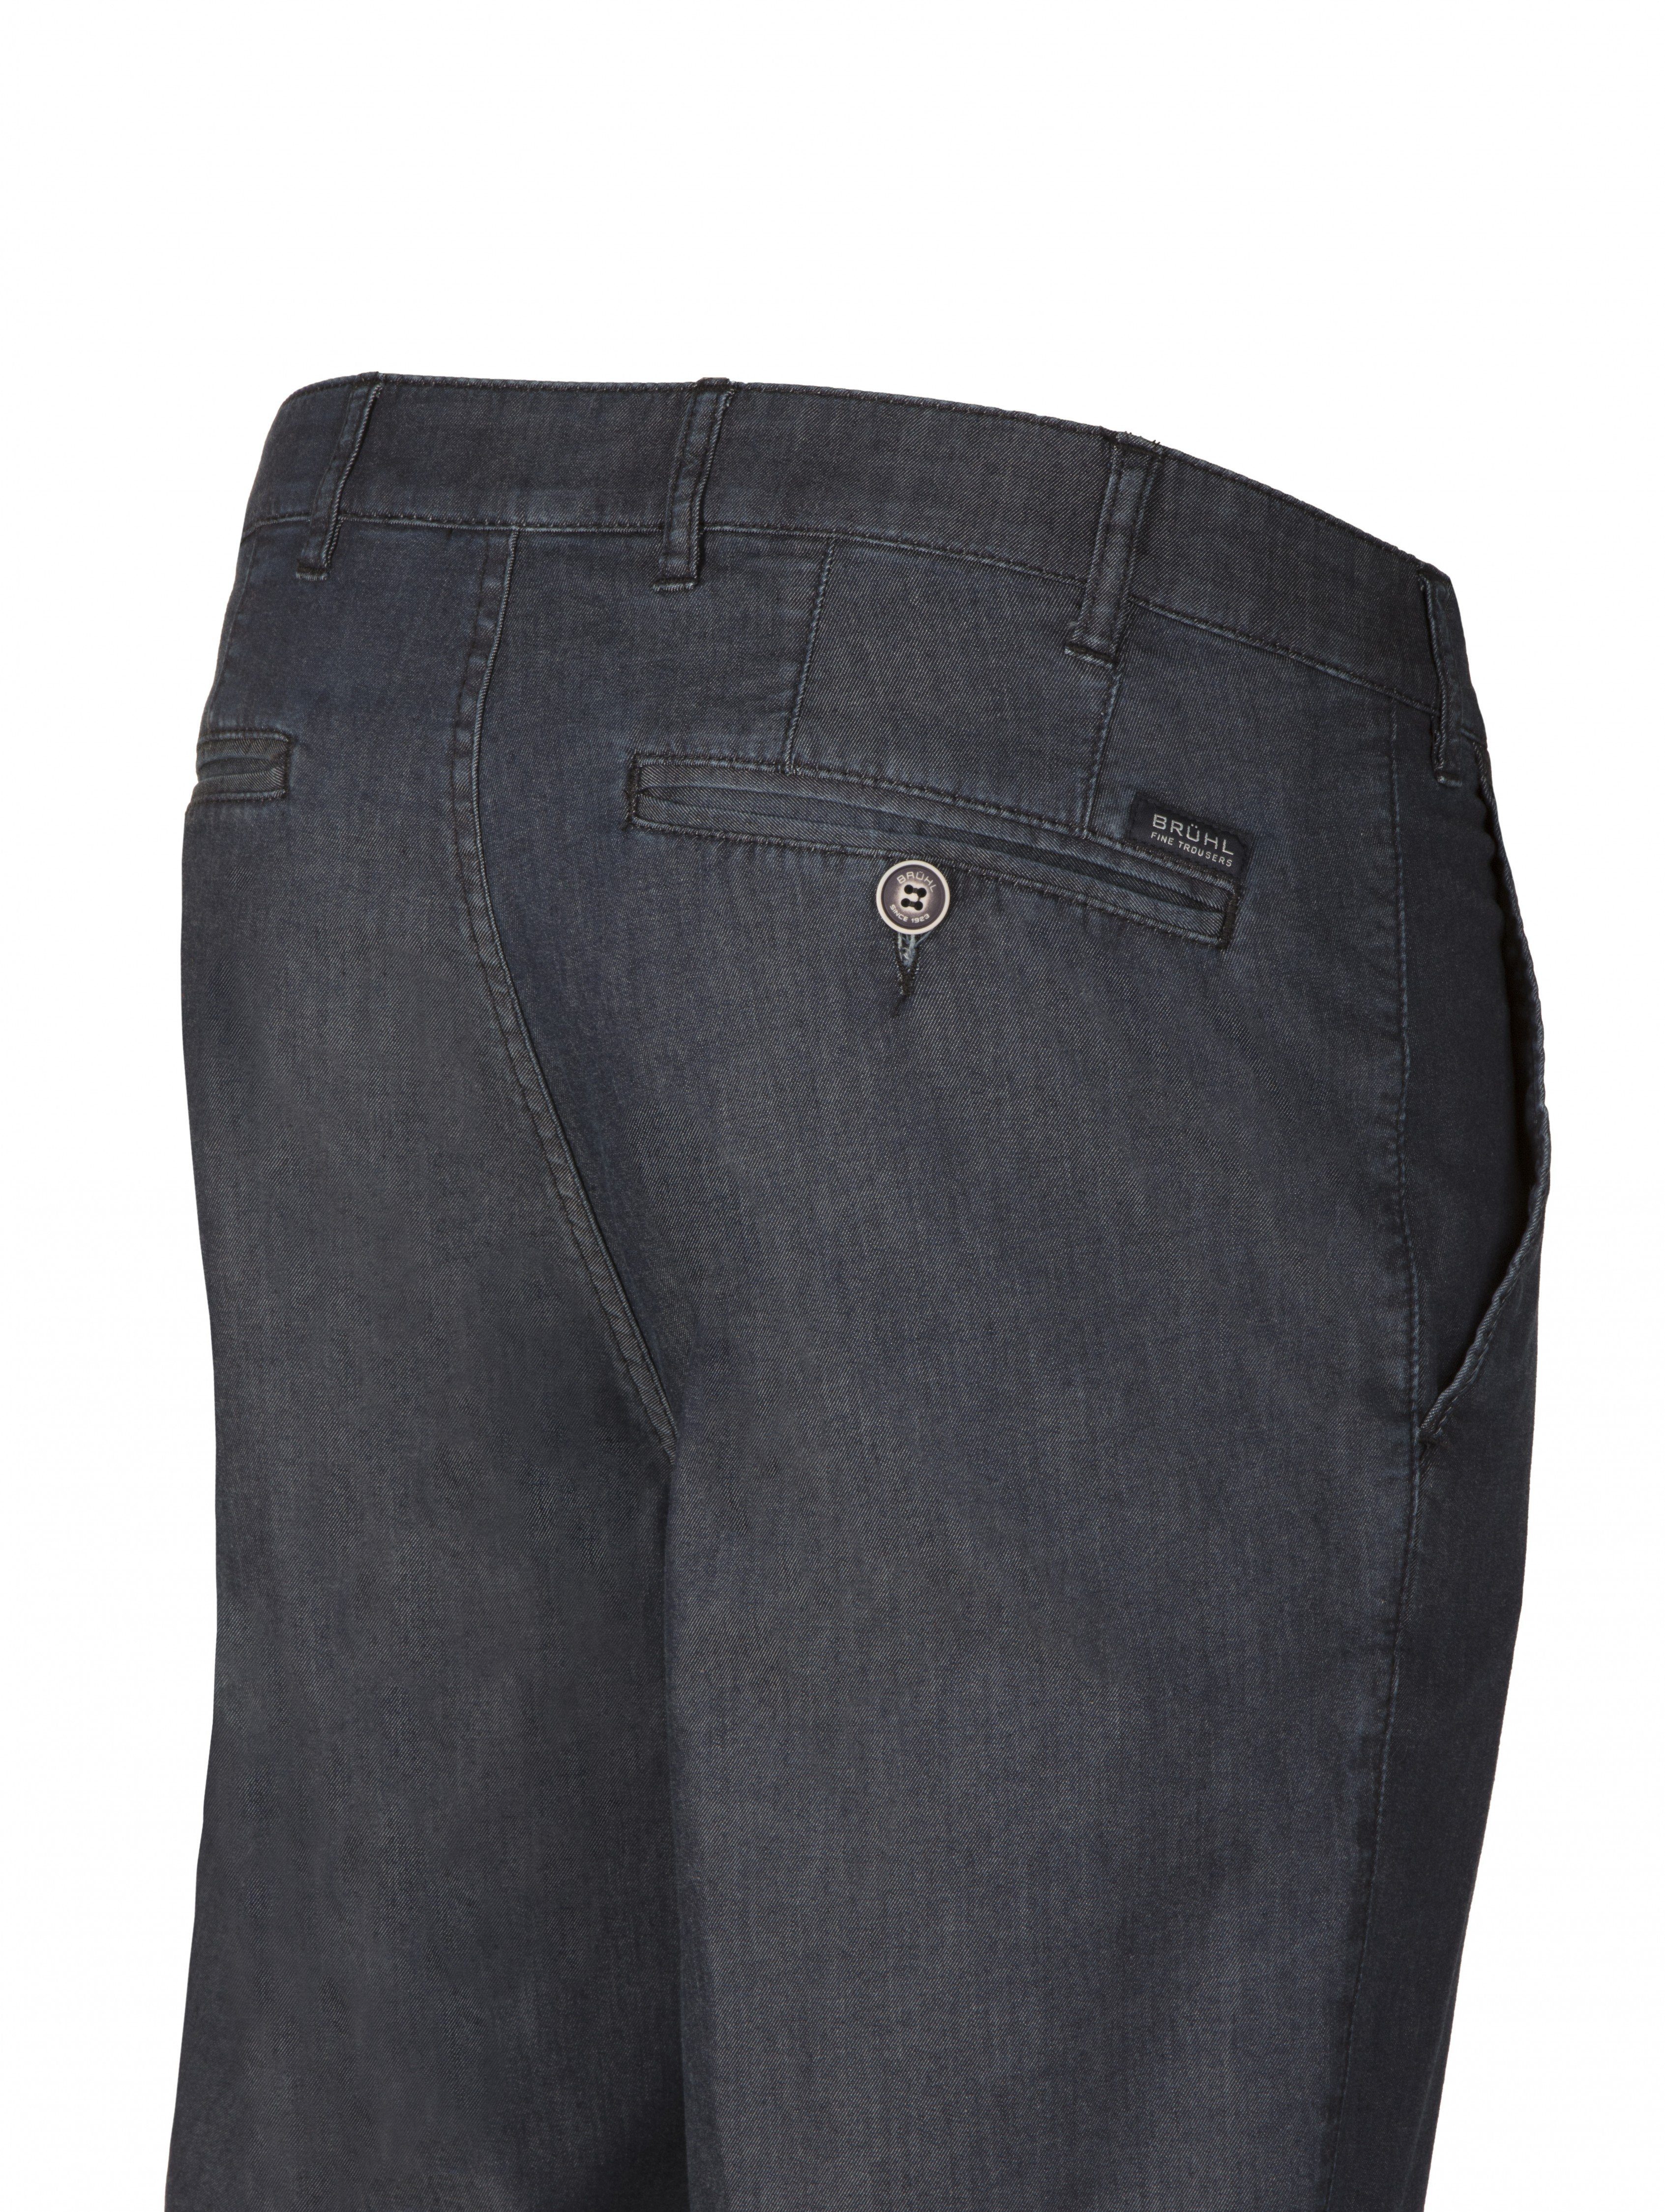 Brühl Bequeme High-Stretch Jeans Denim ultraleichtem in Parma blau-schwarz